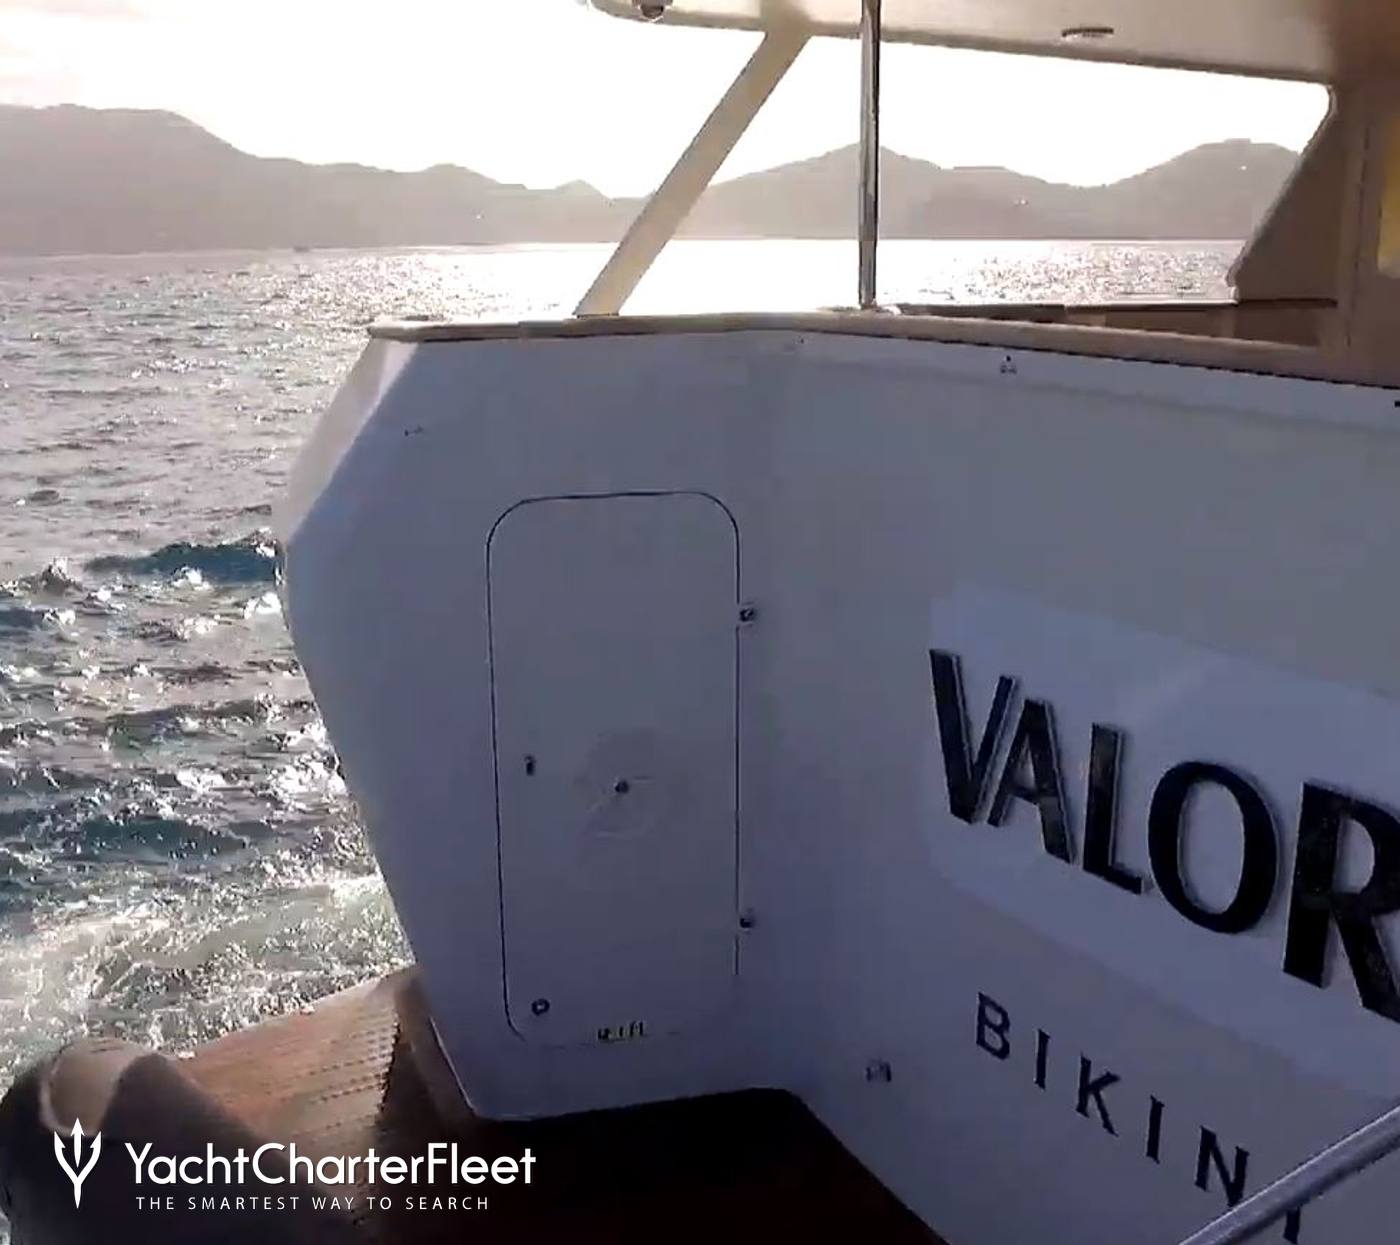 valor yacht tracker